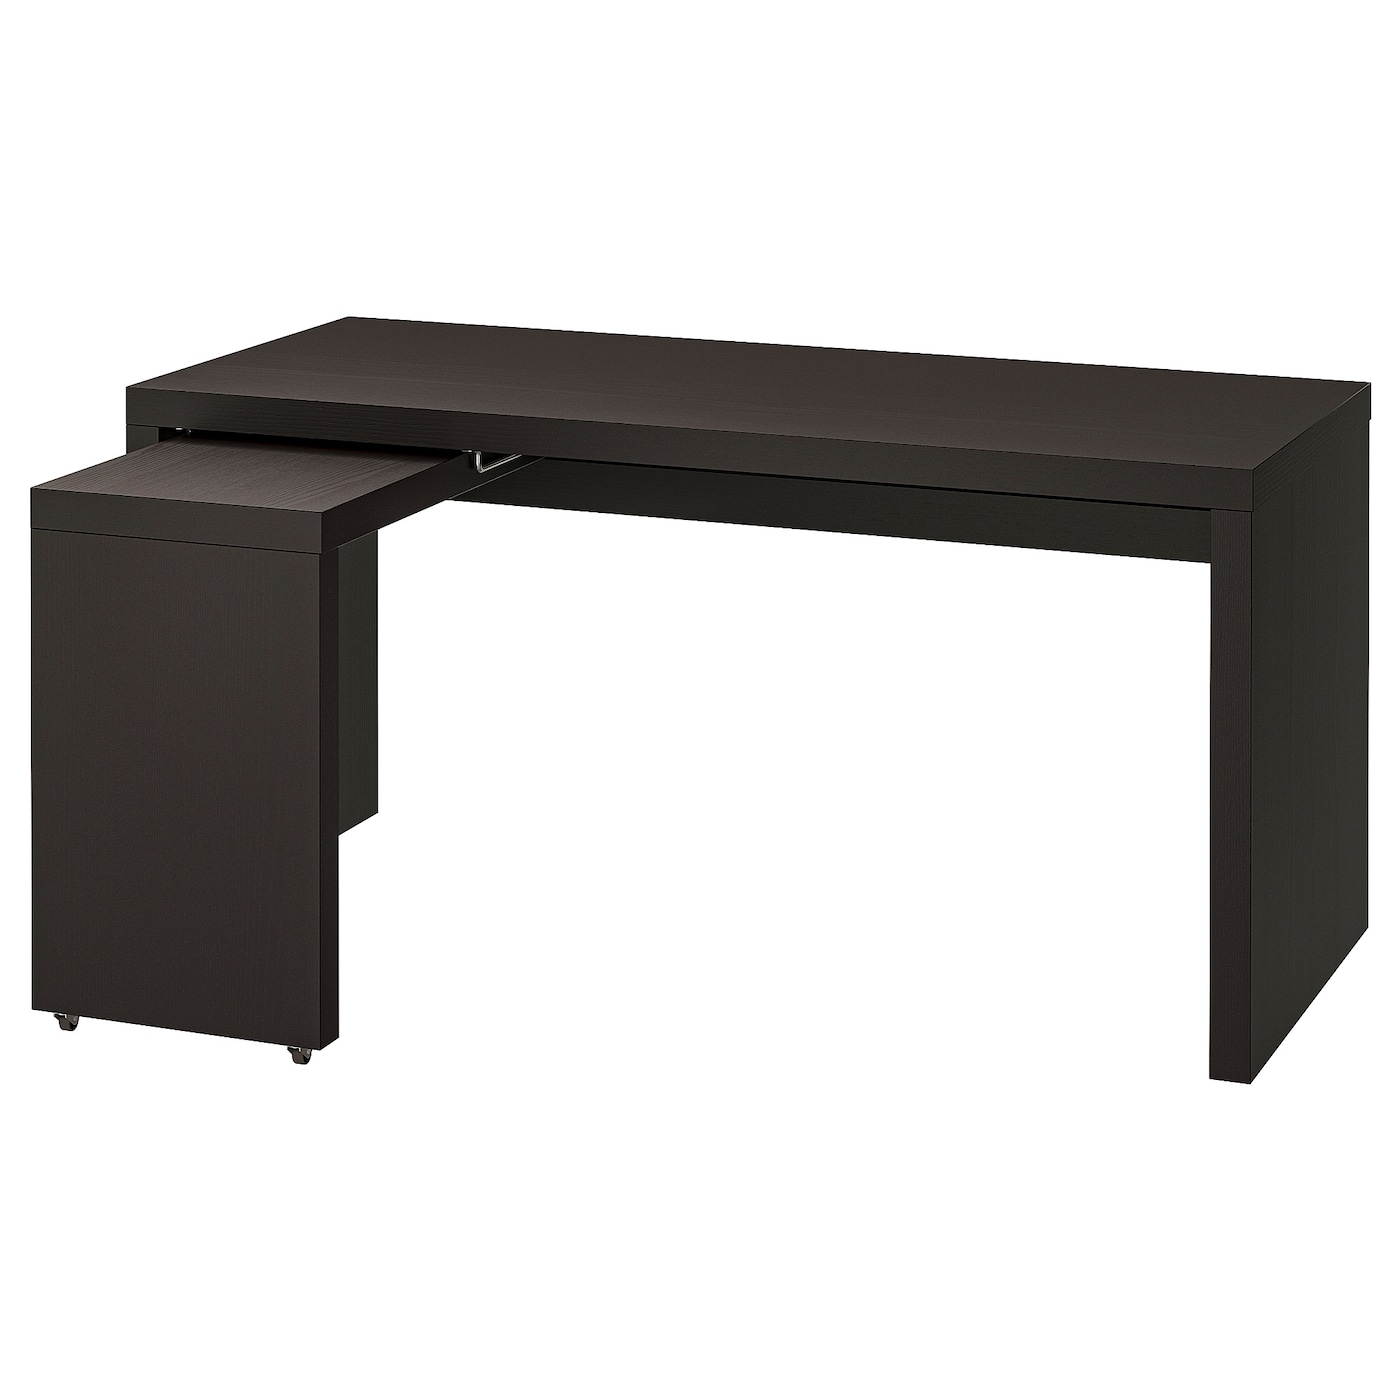 Письменный стол с выдвижной панелью - IKEA MALM/МАЛЬМ ИКЕА, 151х65х73 см, черно-коричневый